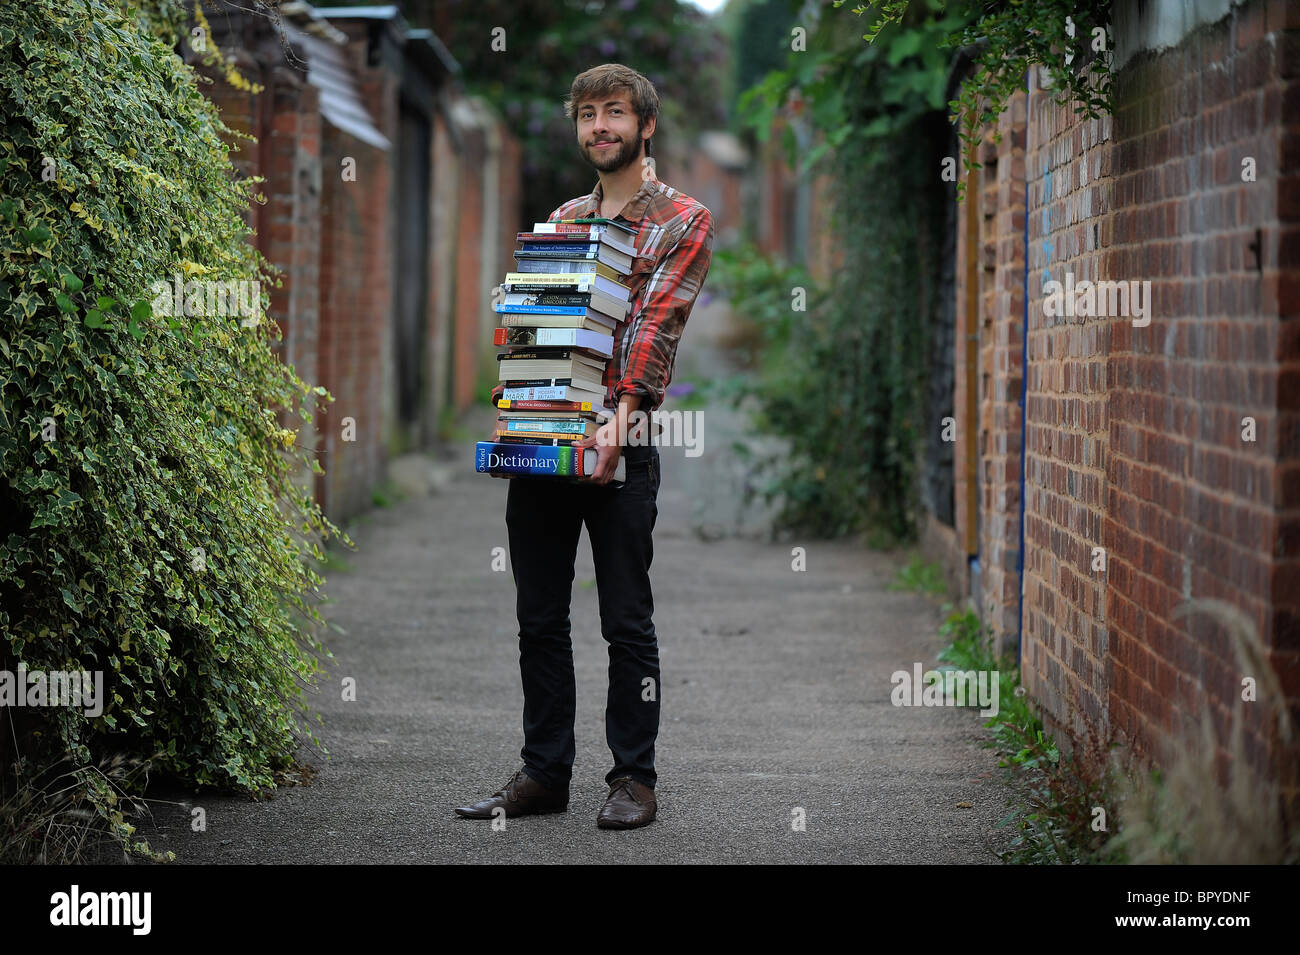 Uno studente in piedi con una grande pila di libri, che illustra lo studio, revisione cramming e revisione Foto Stock